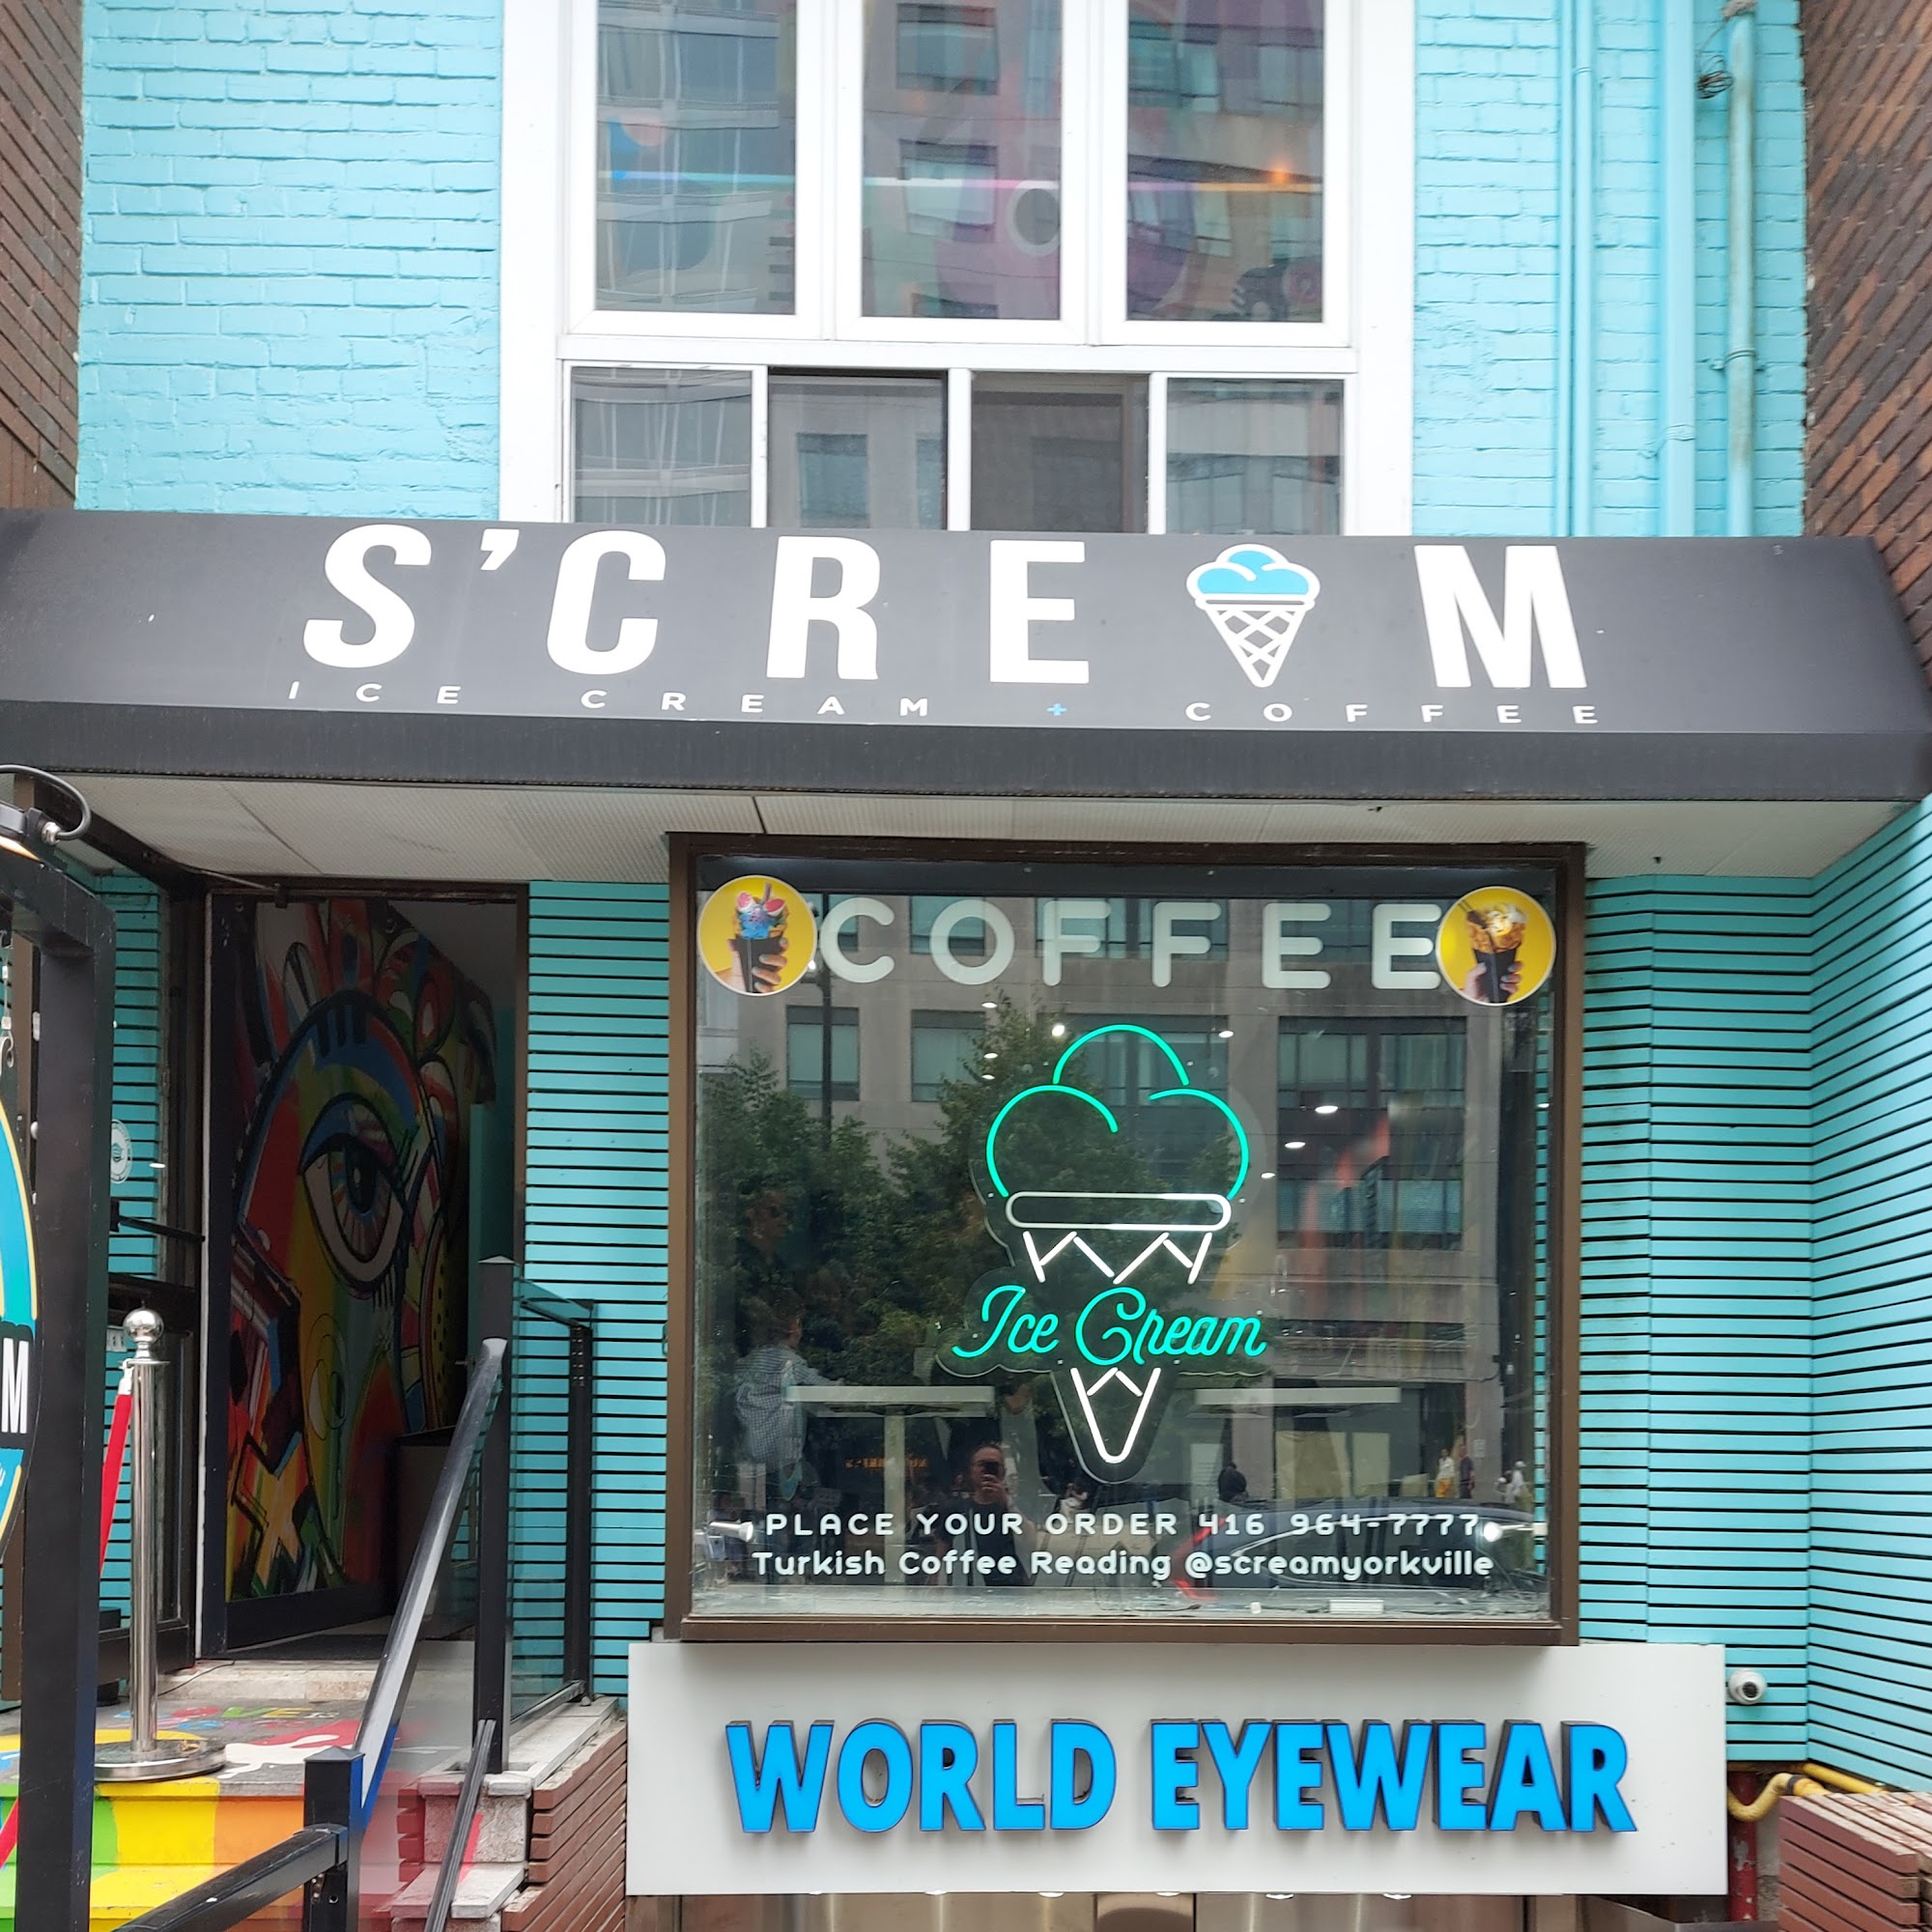 S'cream Ice Cream + Coffee